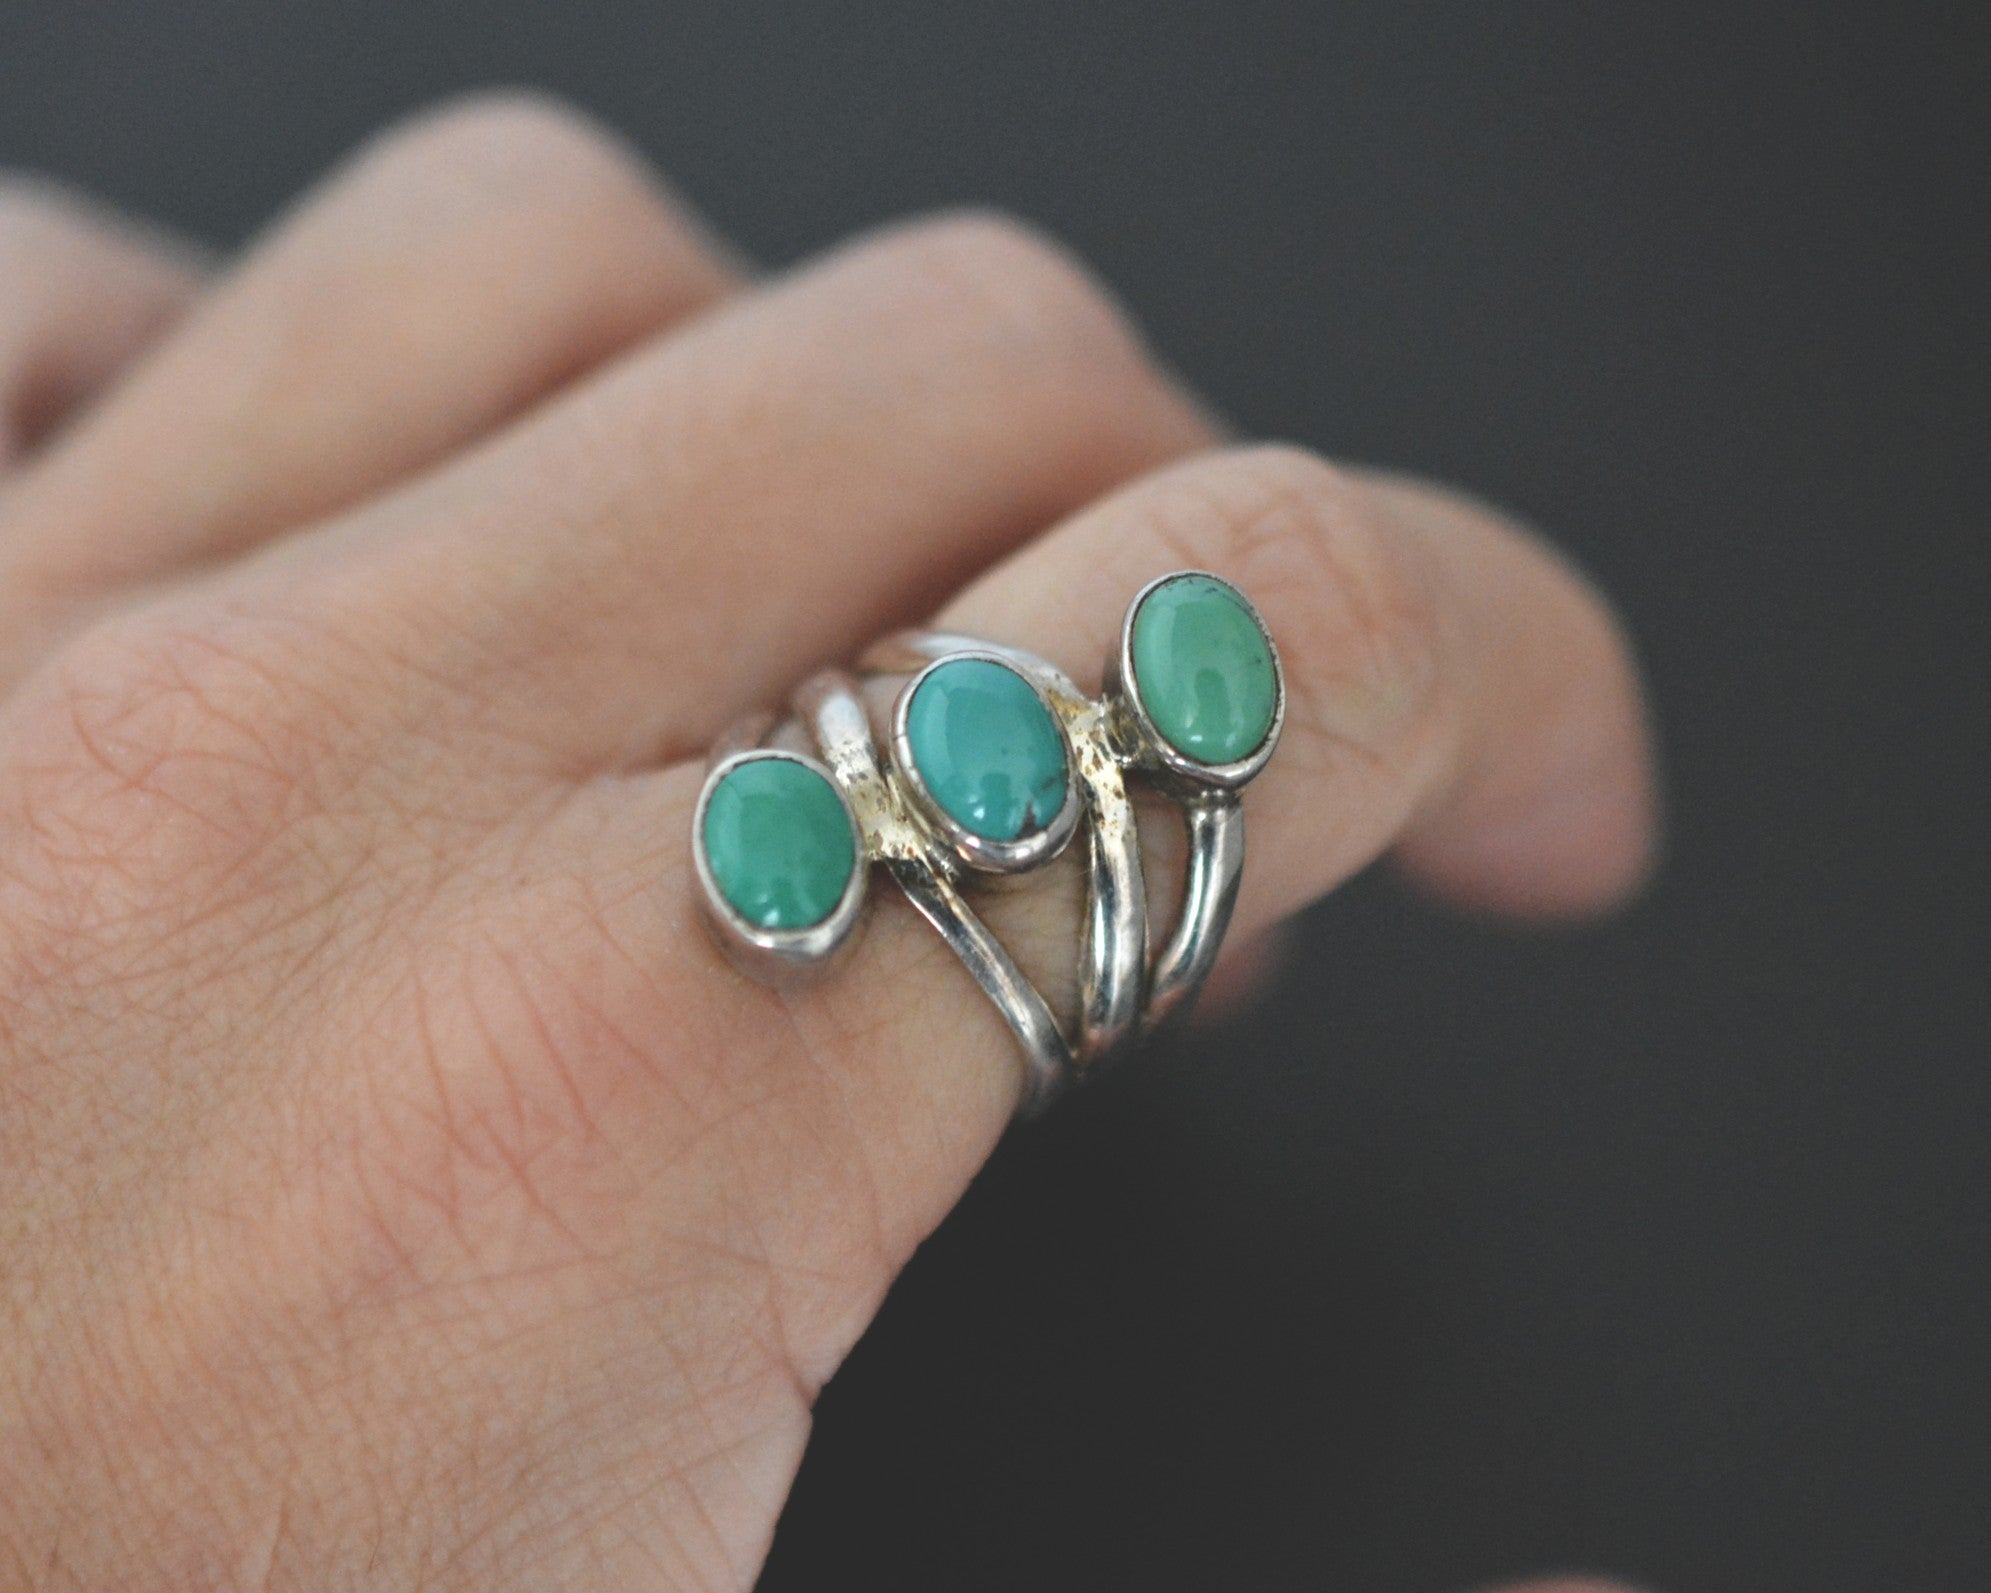 Ethnic Turquoise Ring - Size 7.5